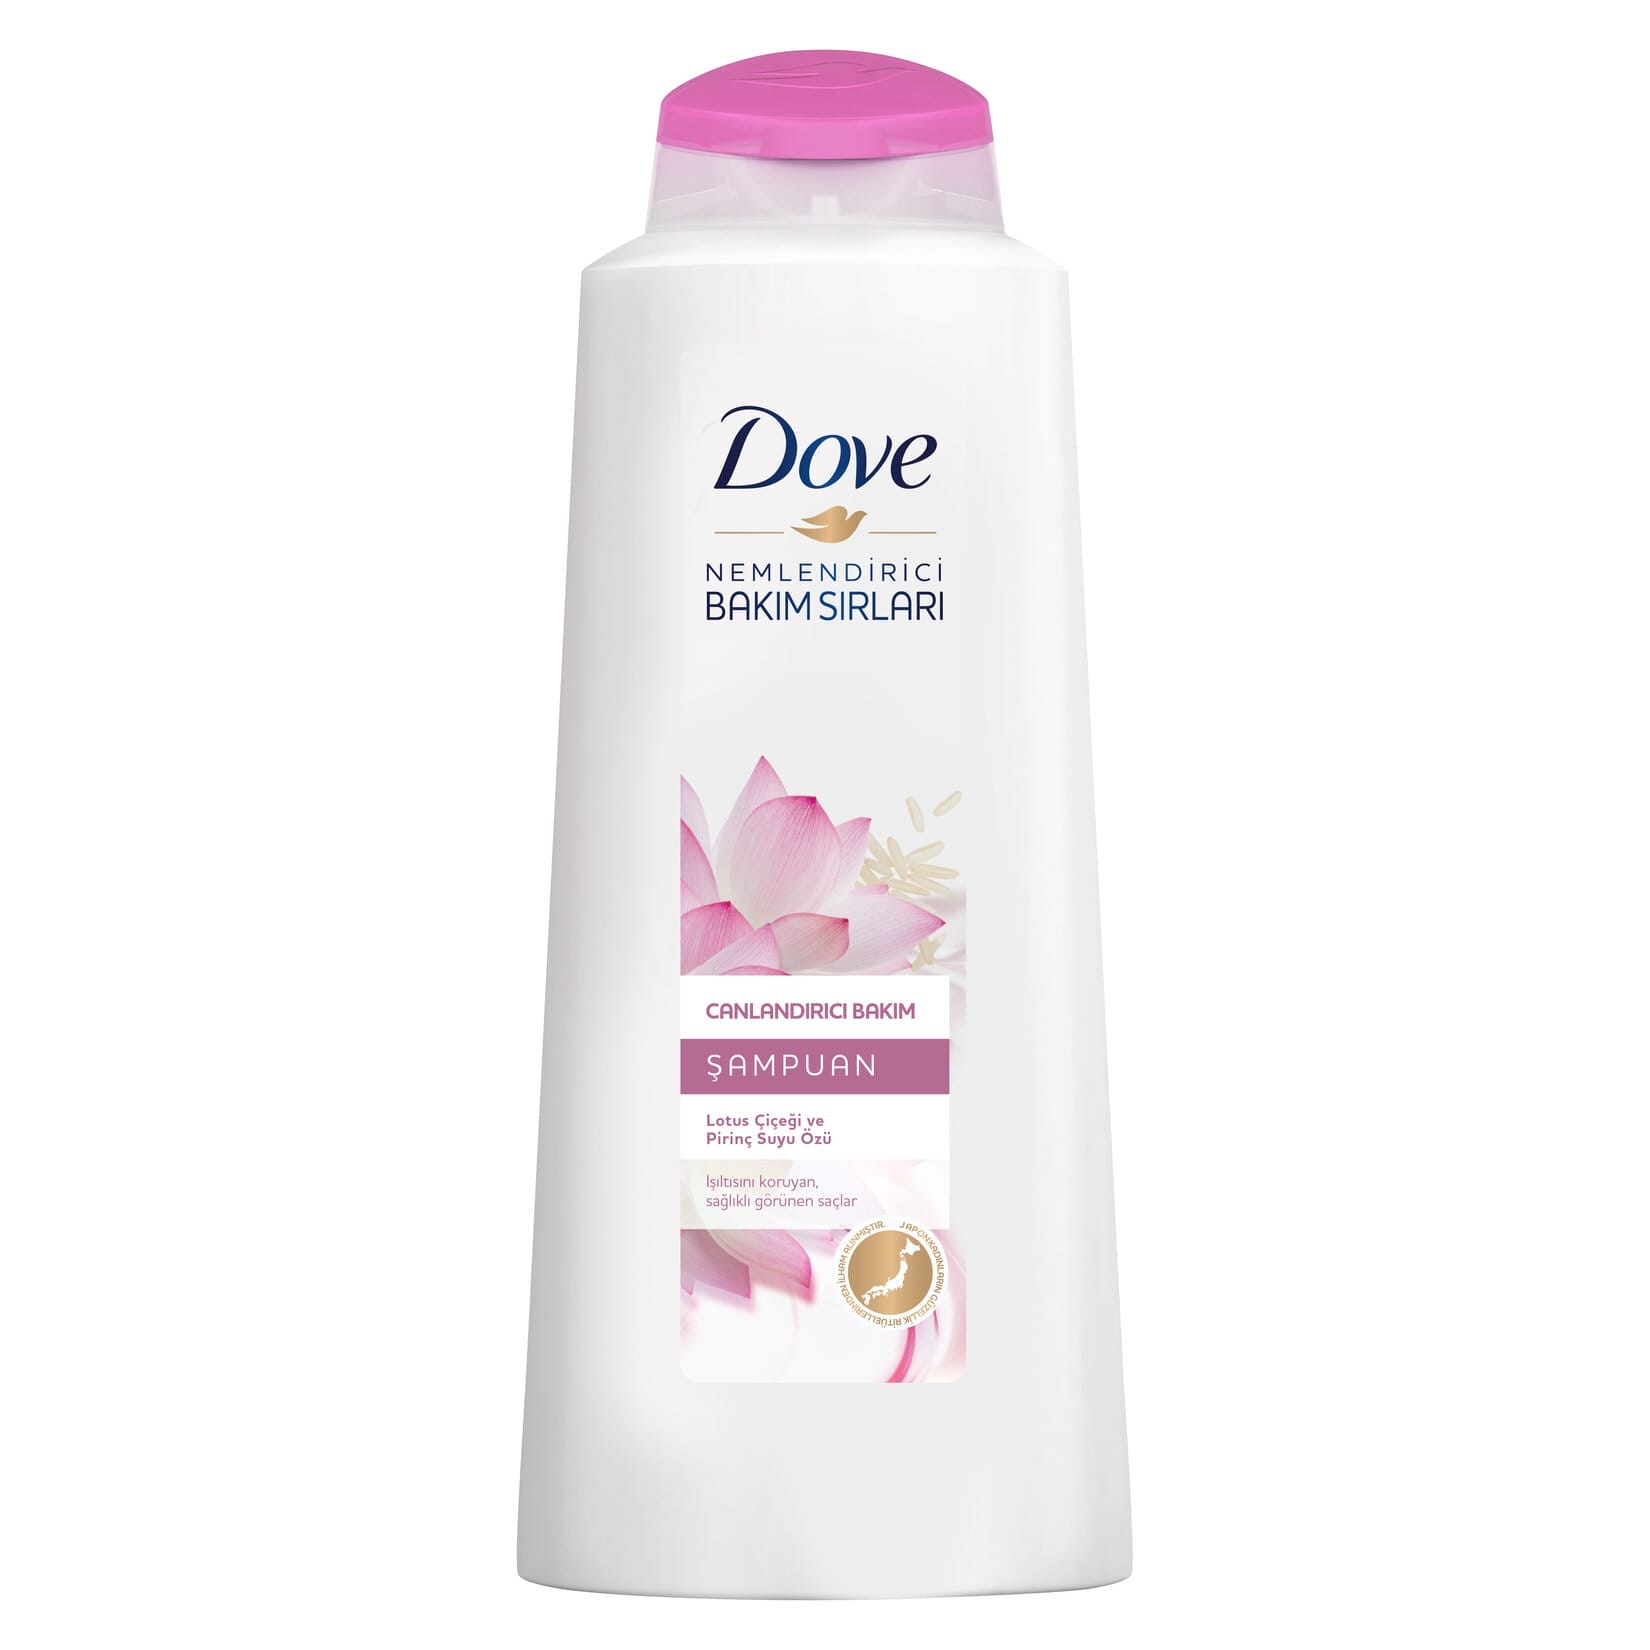 Dove Şampuan Canlandırıcı Bakım 600 Ml